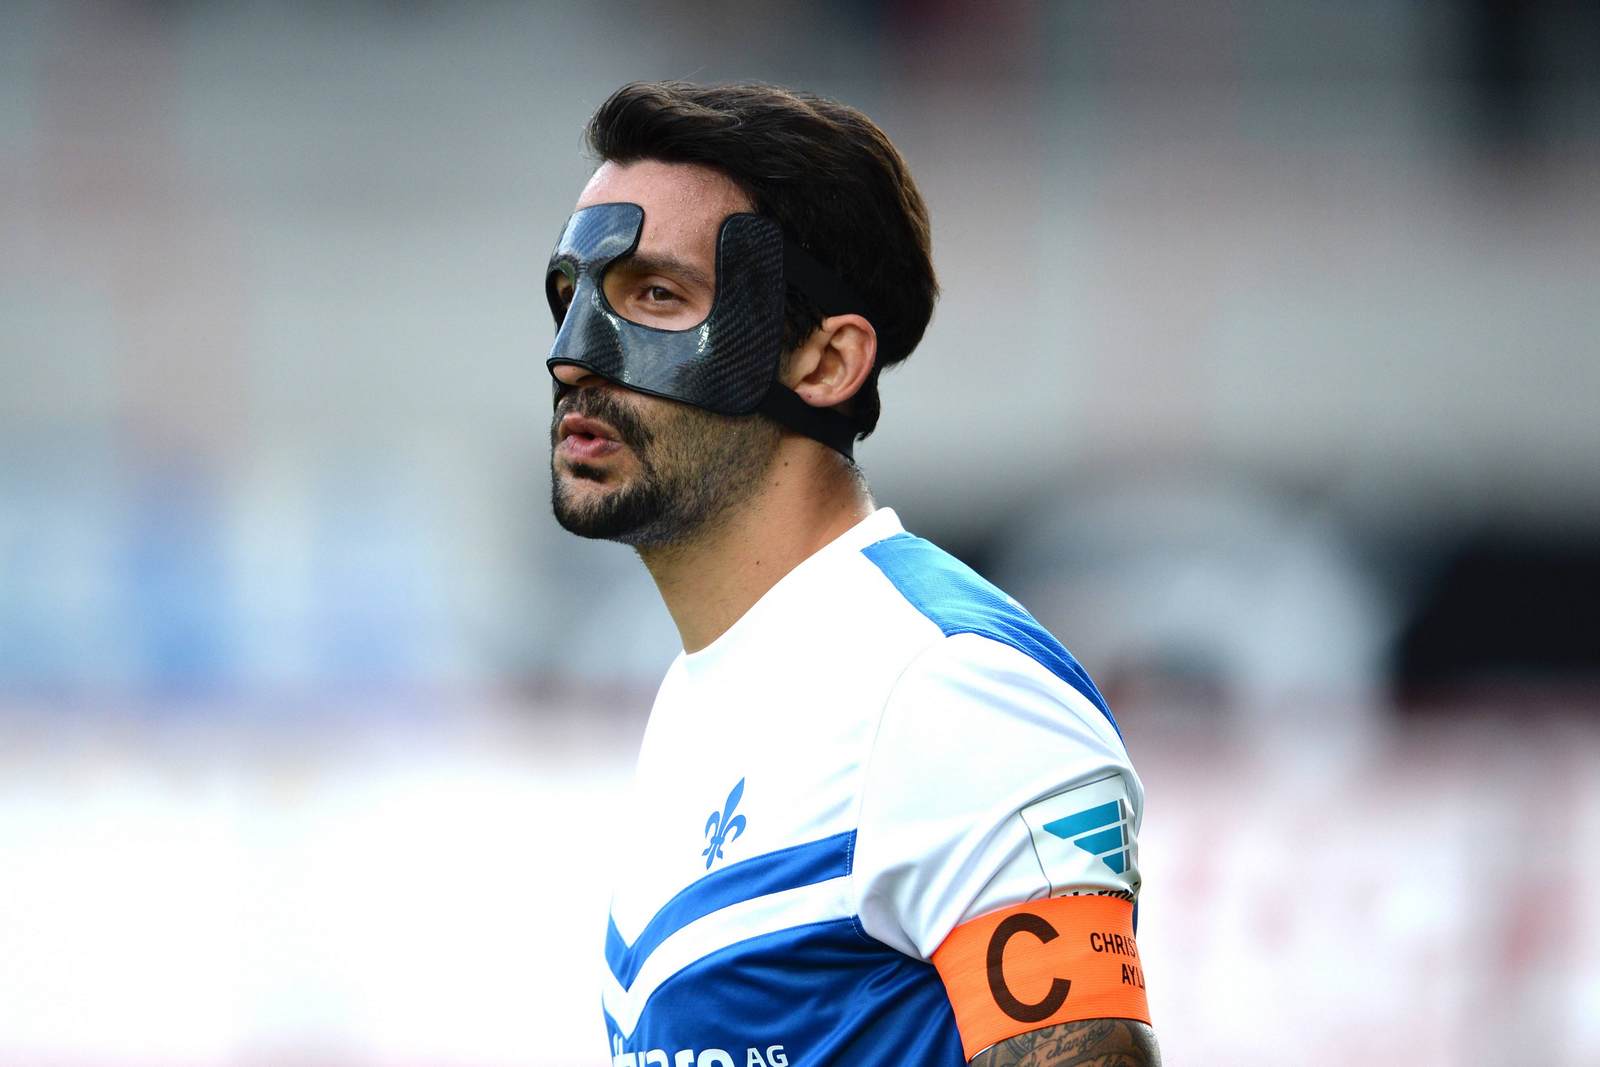 Aytac Sulu vom SV Darmstadt mit Gesichtsmaske. Liga-Zwei.de klärt über Gesichtsverletzungen auf.